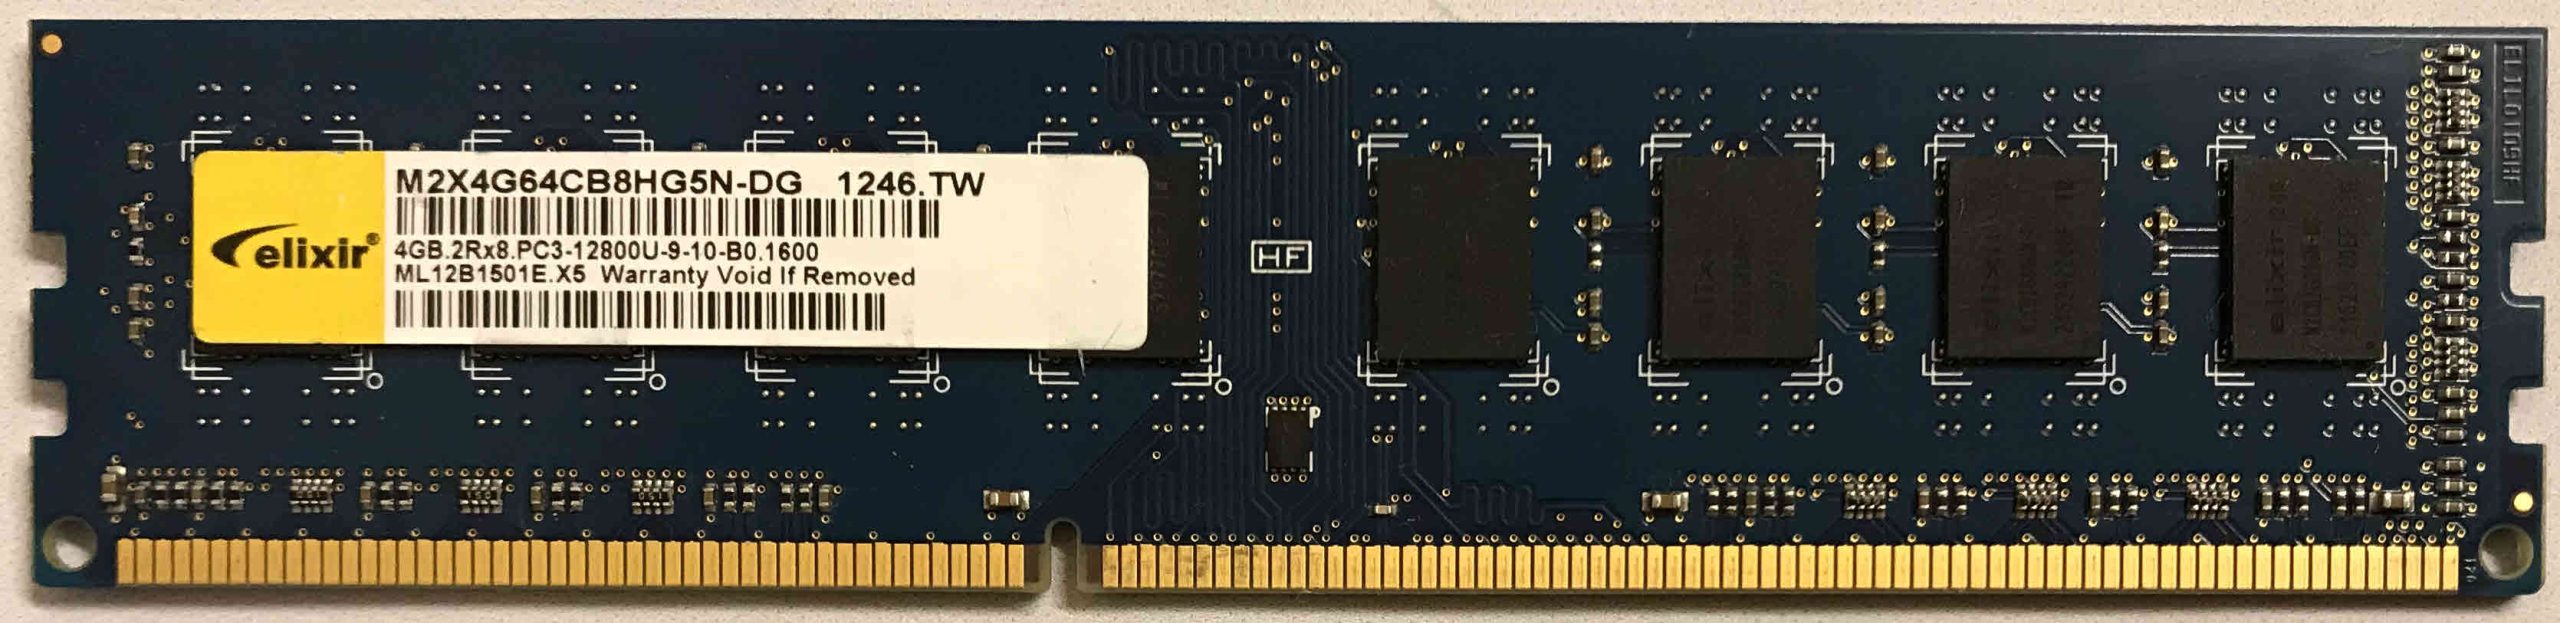 4GB 2Rx8 PC3-12800U-9-10-B0 SKhynix